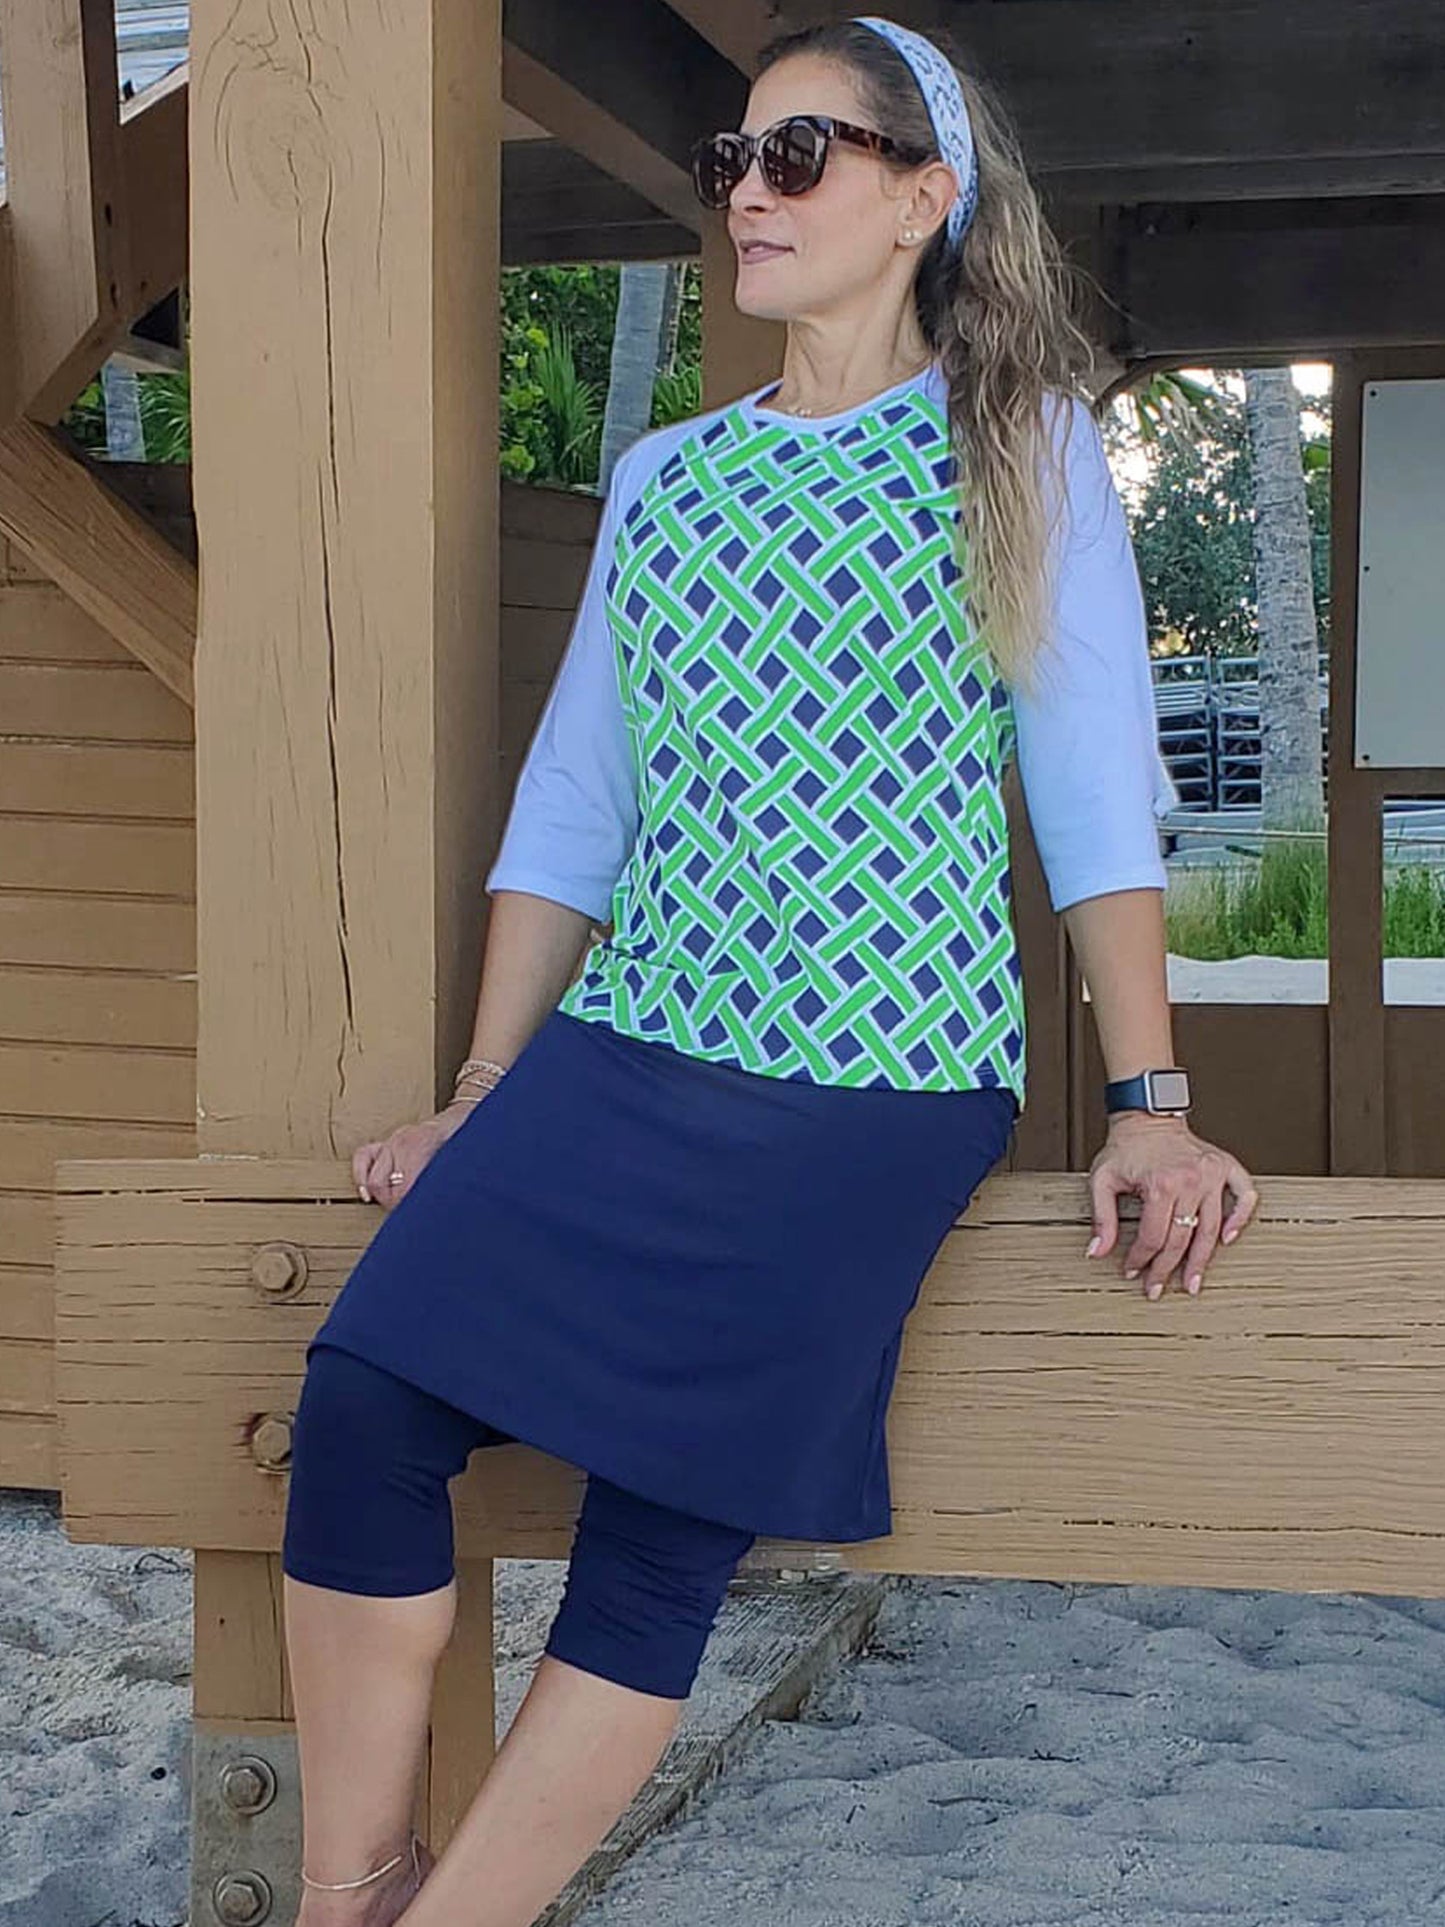 Women's active long skirt with built in capri leggings in navy blue.